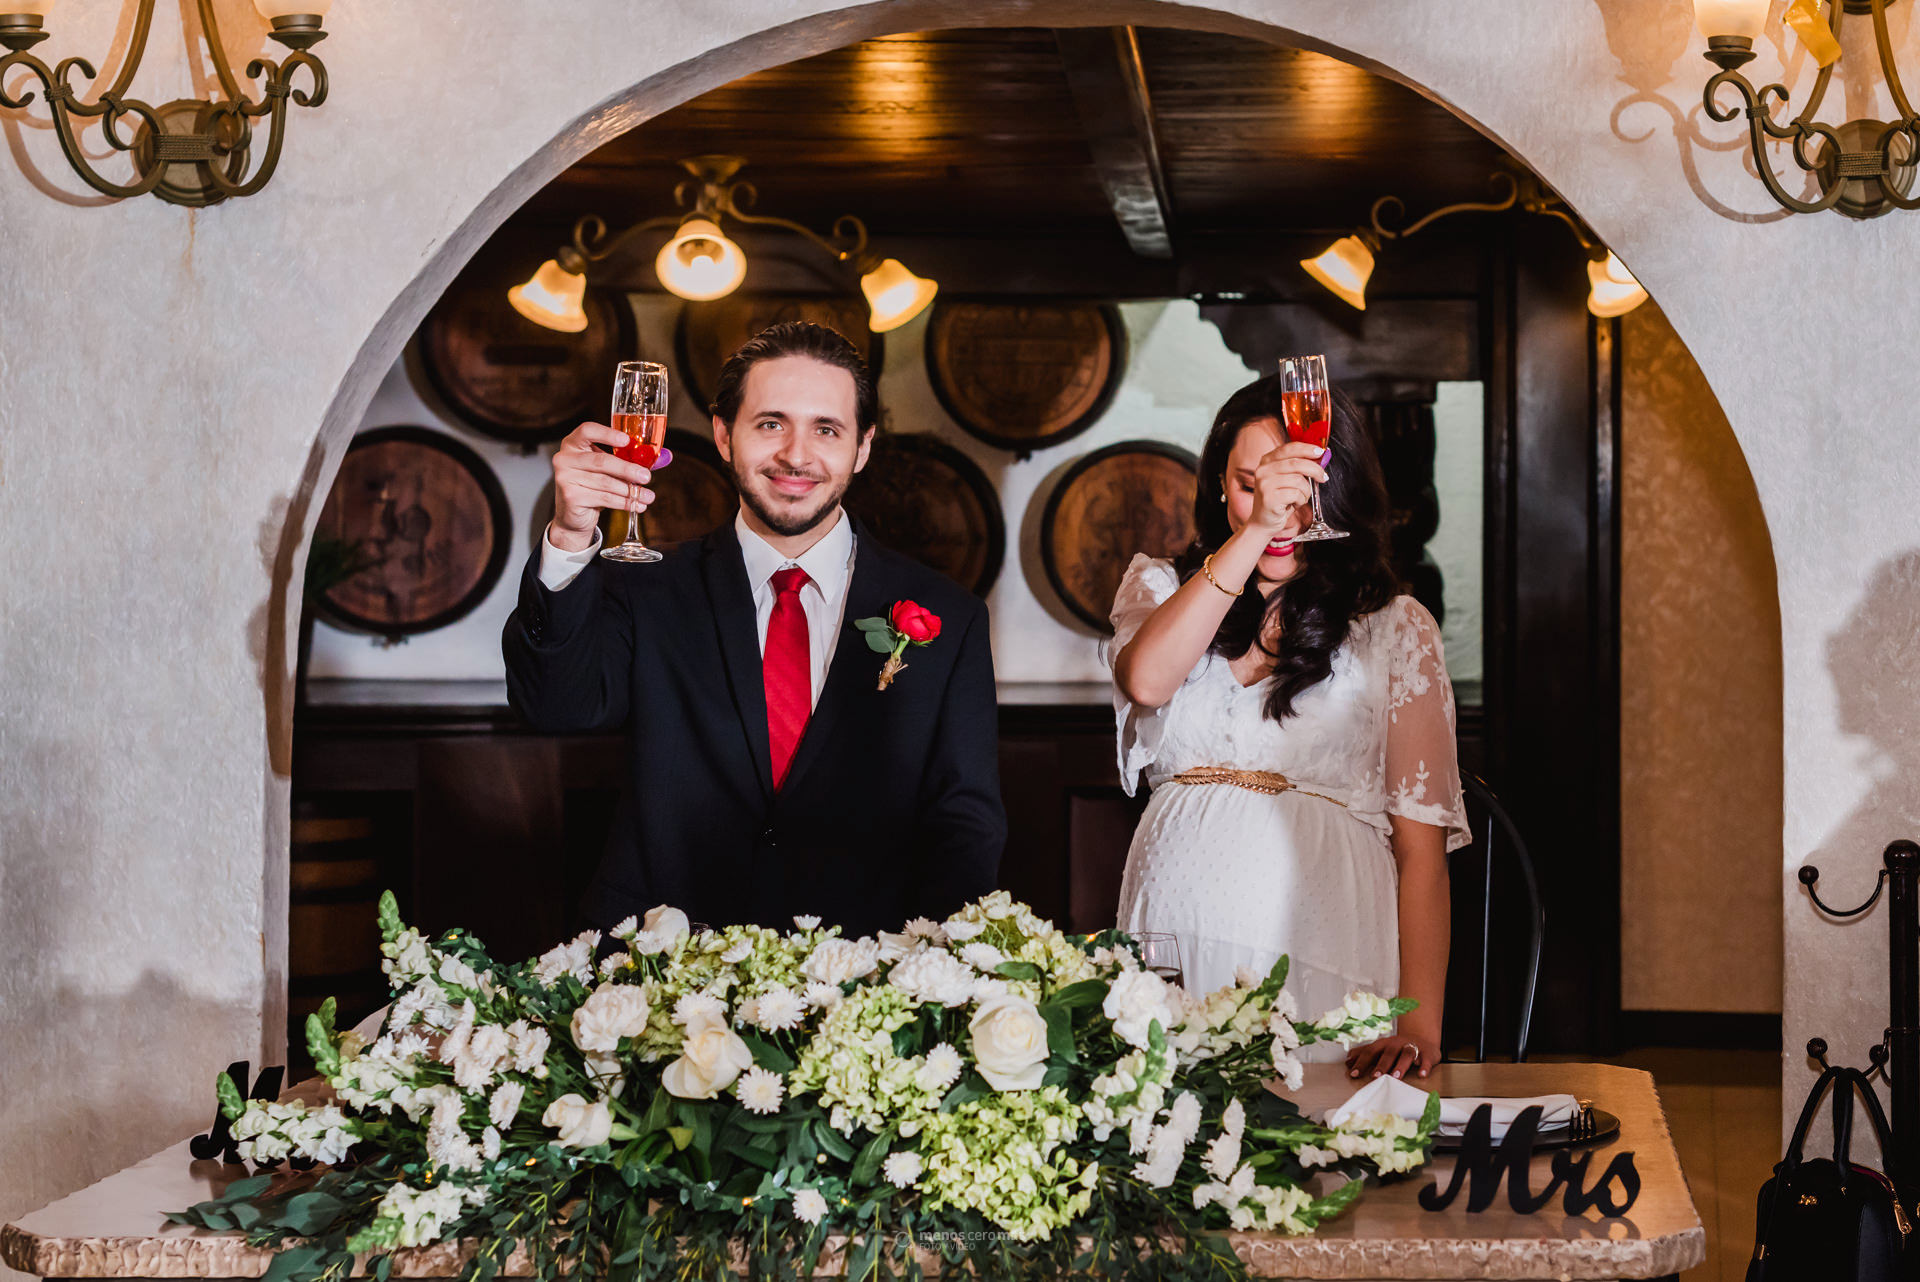 Fotografía de Johanna y Adrián brindando en su boda civil celebrada en Las Pampas Eventos, en Monterrey, México. Johanna, vestida con un vestido blanco, sonríe y mira a Adrián, quien la mira con amor.